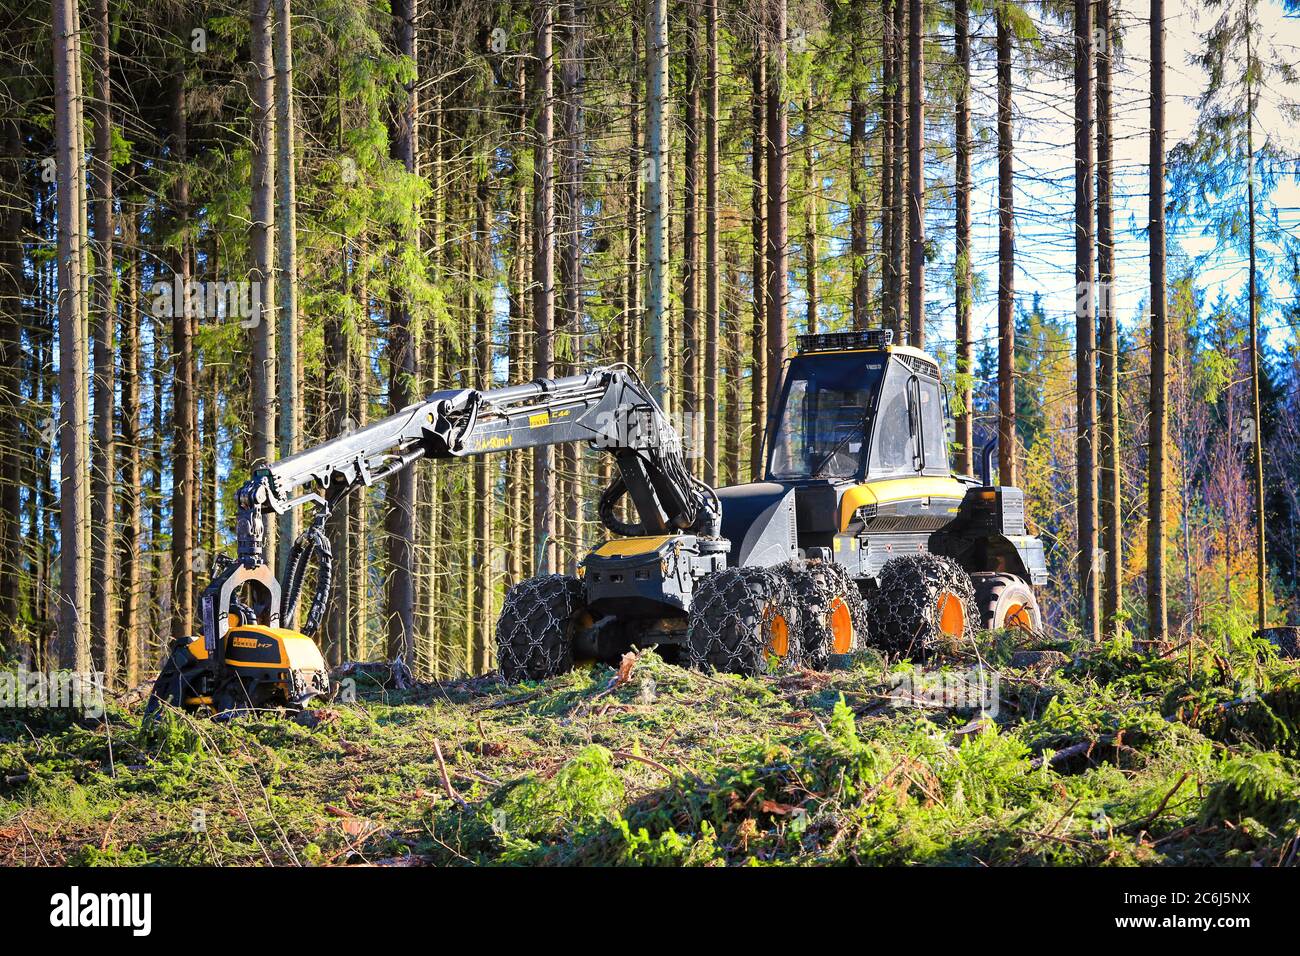 Moissonneuse forestière de la forêt de PONSSE Ergo sur le site d'exploitation forestière de la forêt de conifères automnale. Vihti, Finlande. 1er octobre 2016. Banque D'Images